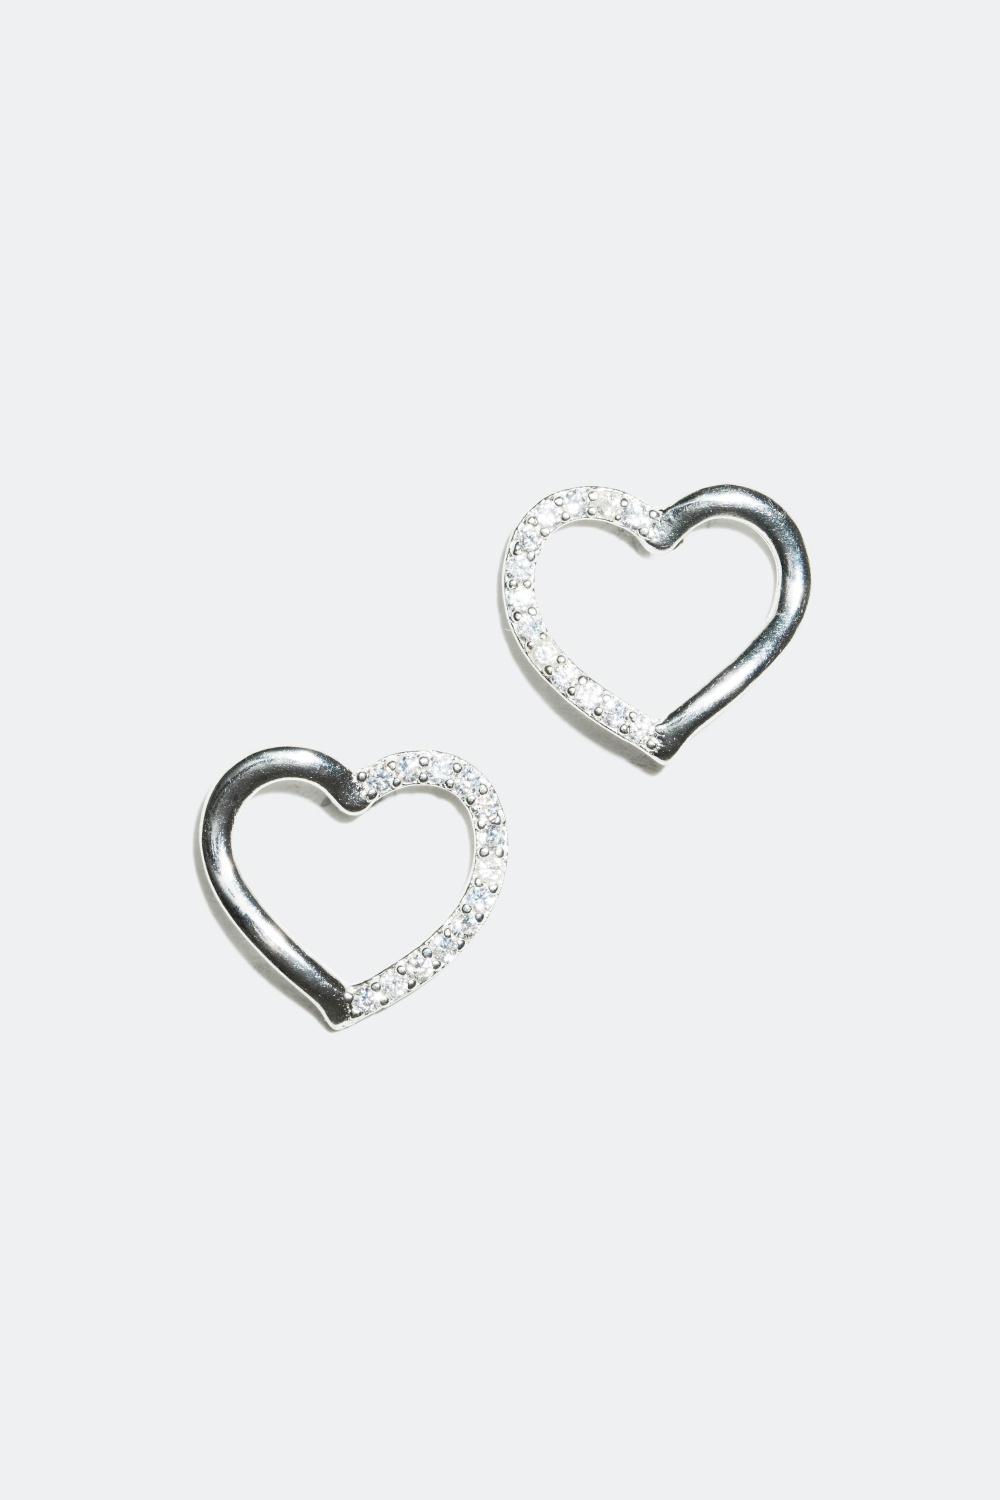 Silverörhängen, hjärtan dekorerade med cubic zirconia glasstenar i gruppen Äkta silver / Silverörhängen / Studs hos Glitter (322124)